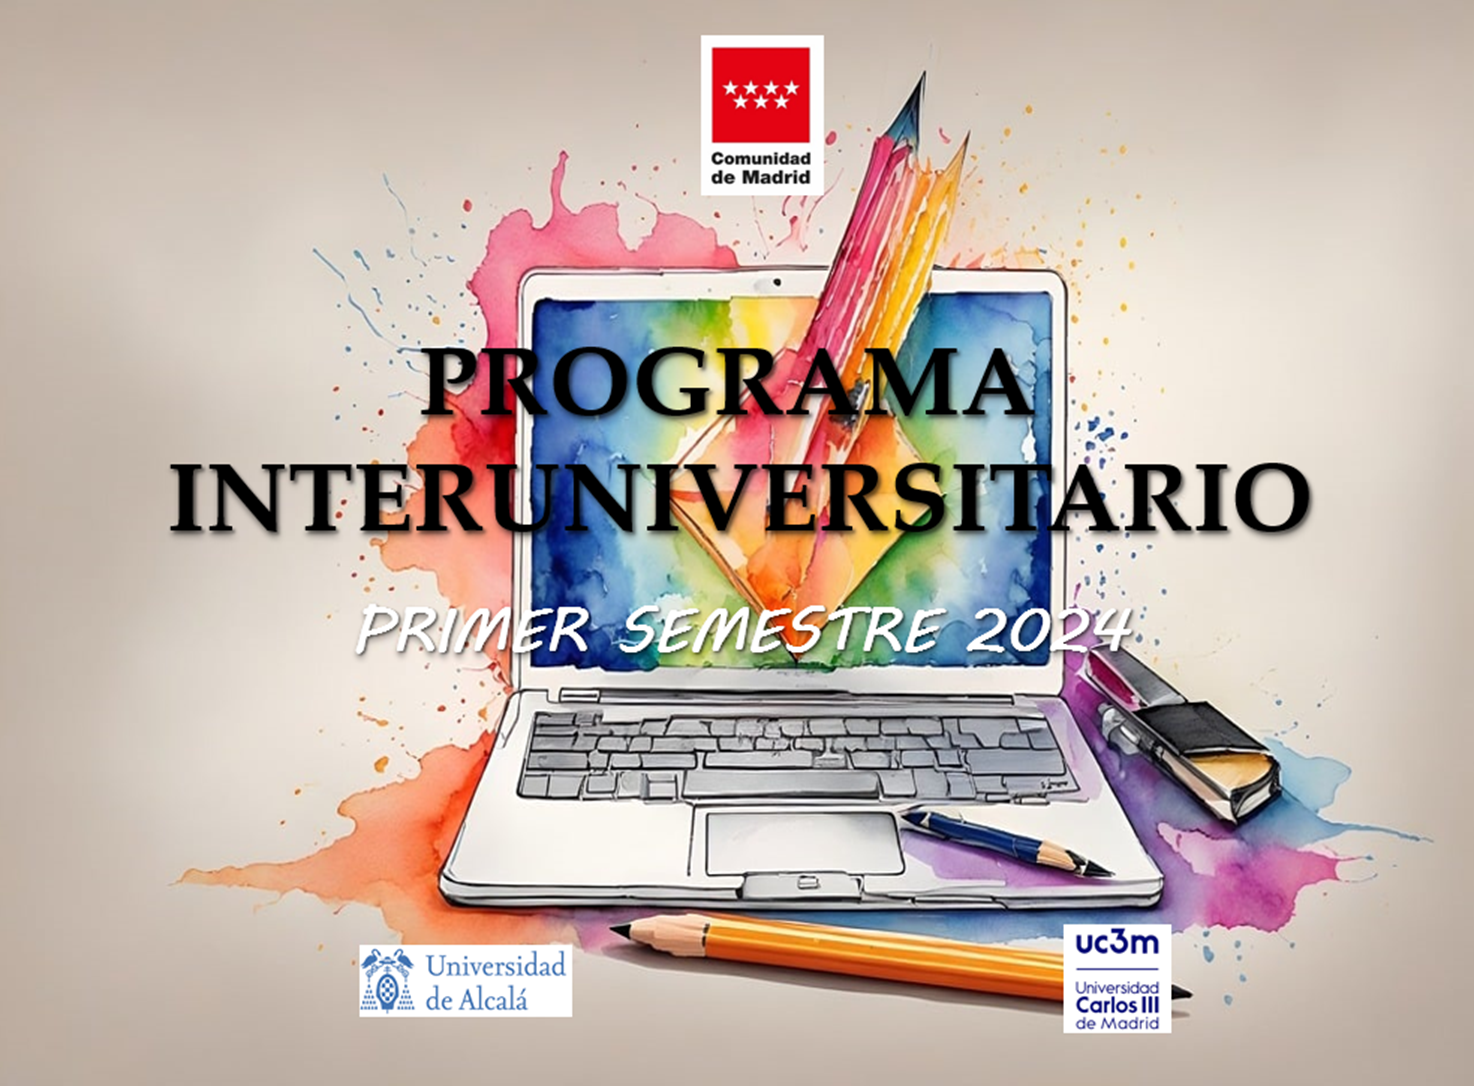 Programa Interuniversitario impulsado por la Comunidad de Madrid